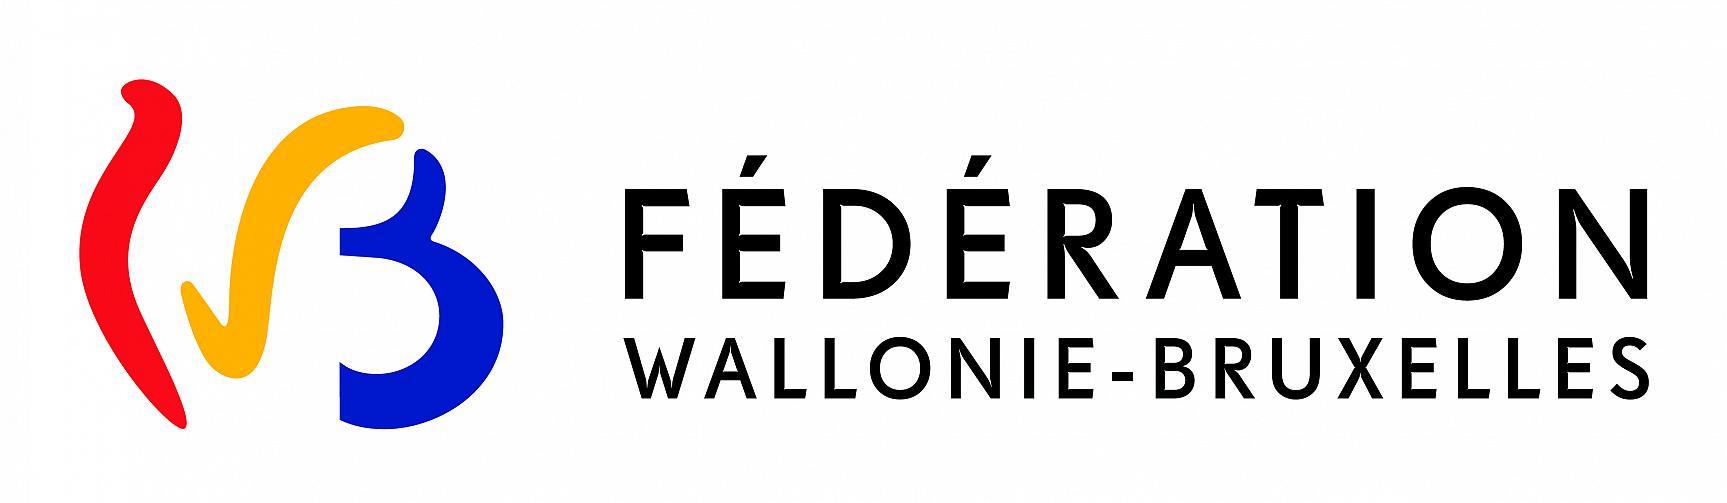 Association reconnue par la Fdration Wallonie Bruxelles dans le cadre de l'ducation permanente